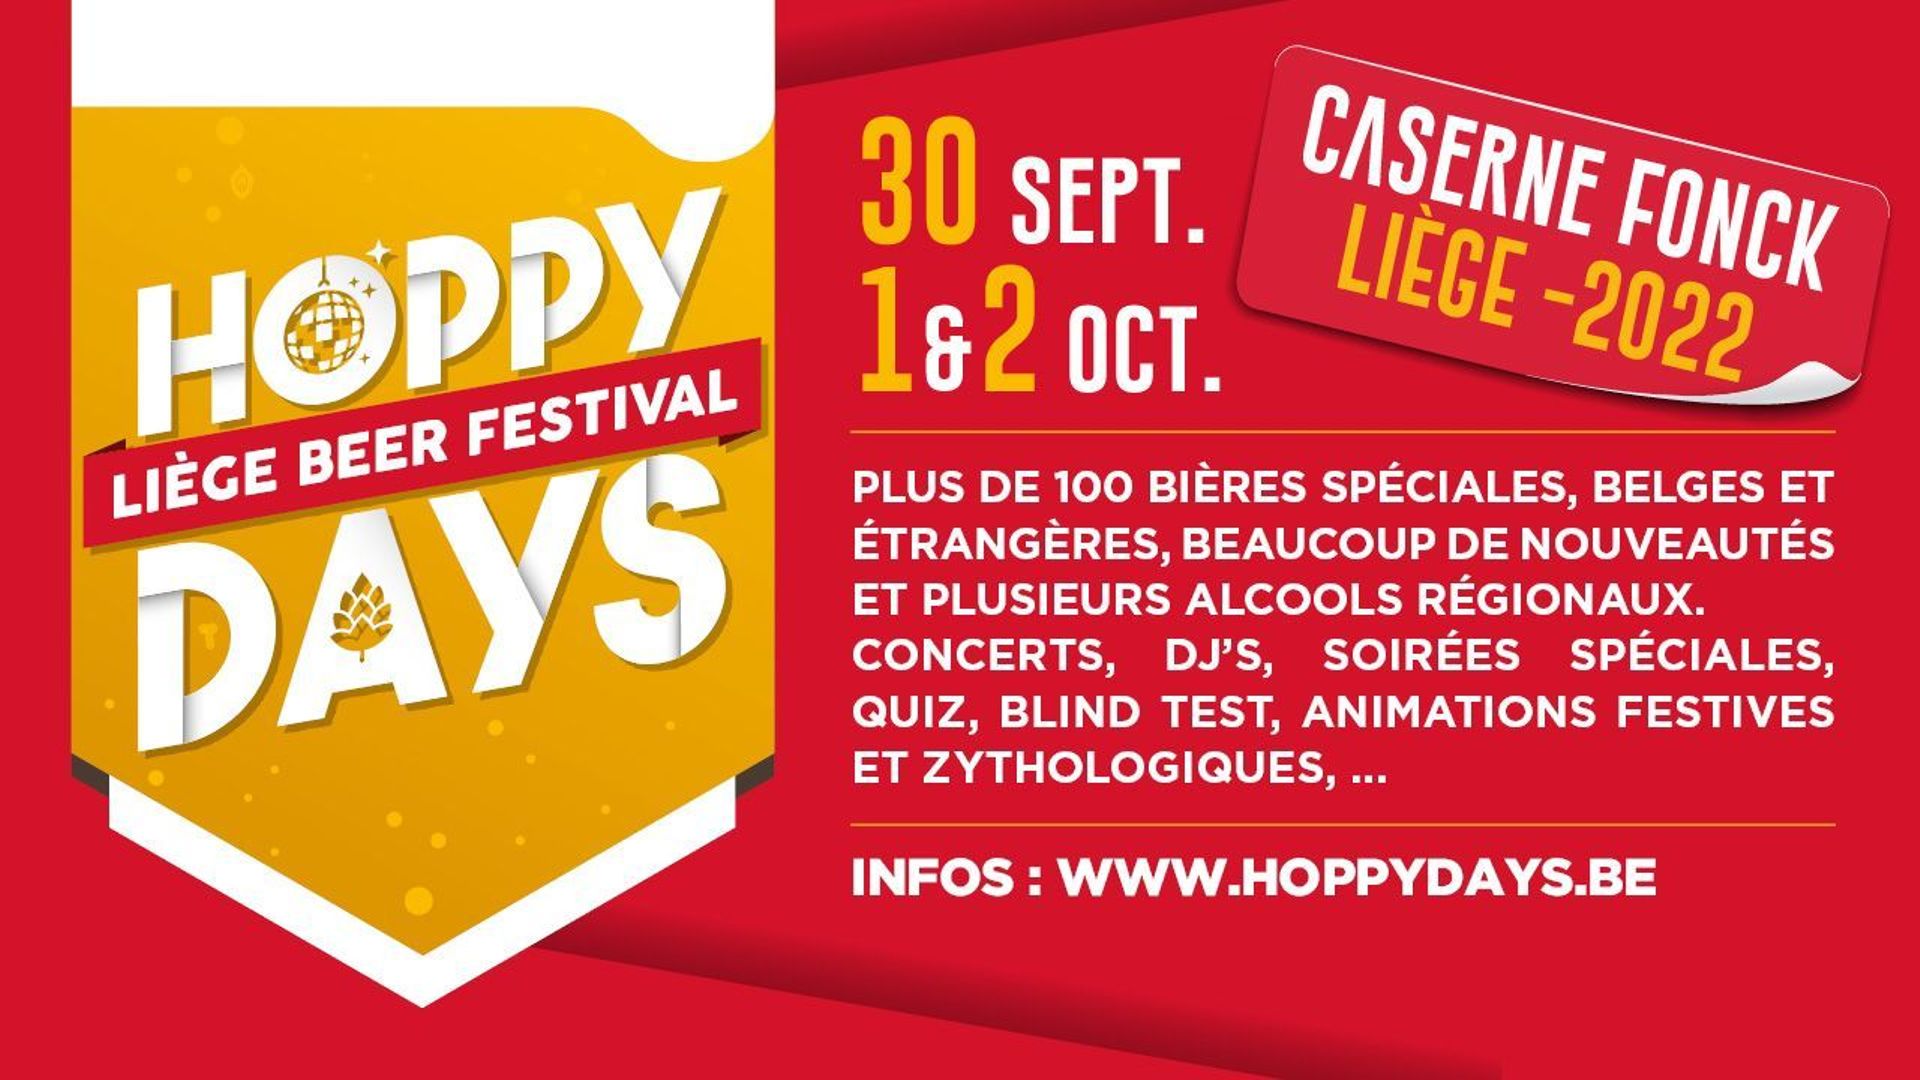 "Hoppy Days Liège Beer Festival"